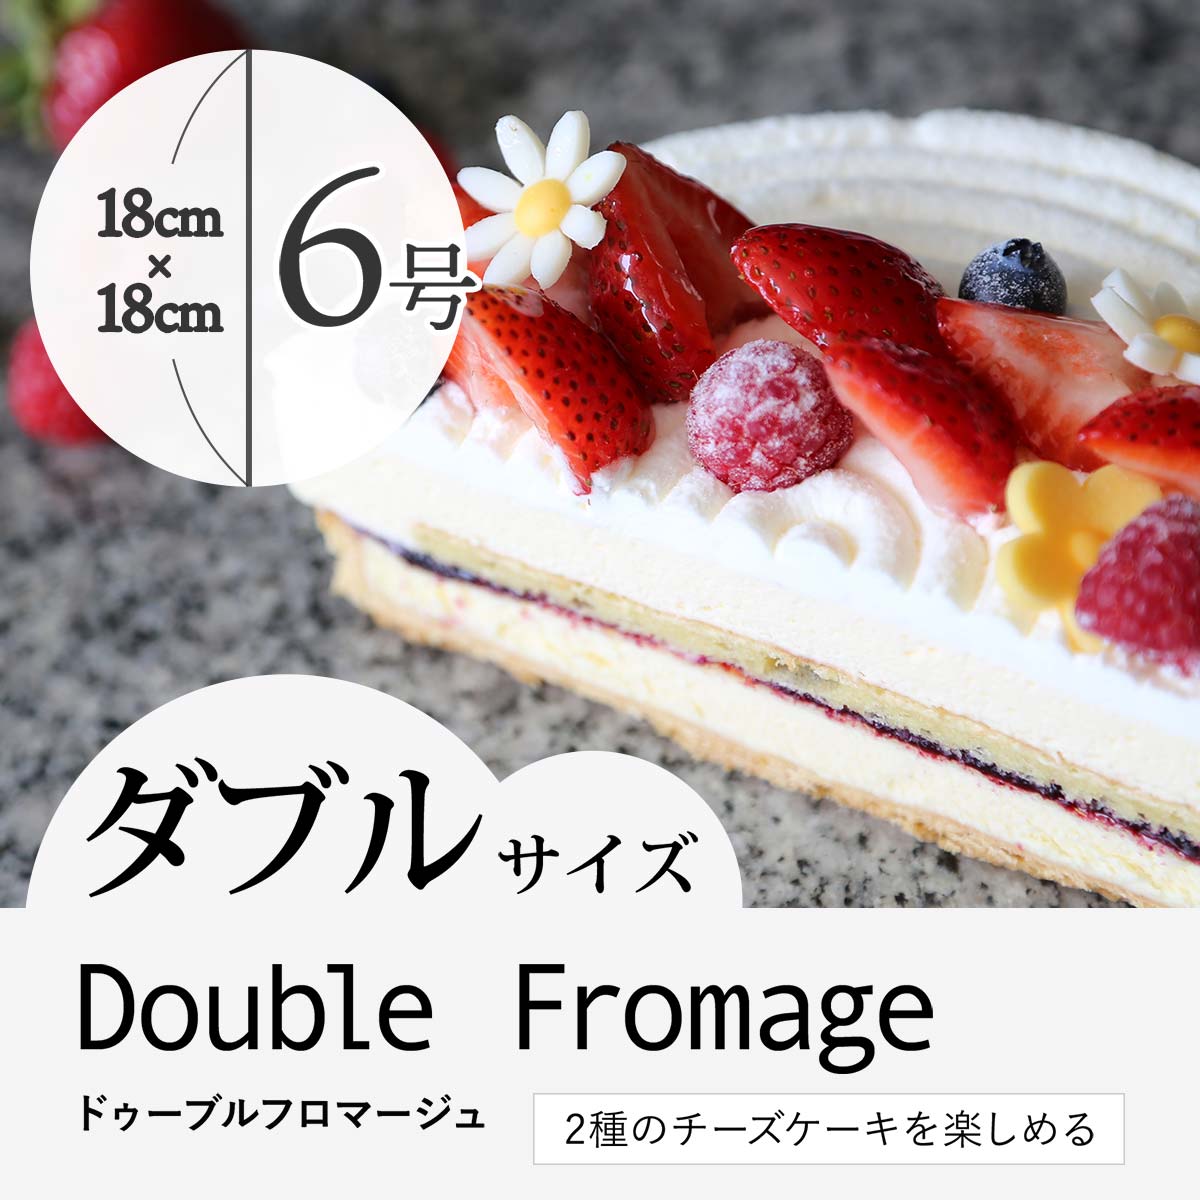 【7〜8人向け】2種のチーズケーキを楽しめる"ドゥーブルフロマージュ”6号 ダブルサイズ 誕生日 バレンタイン スイーツ